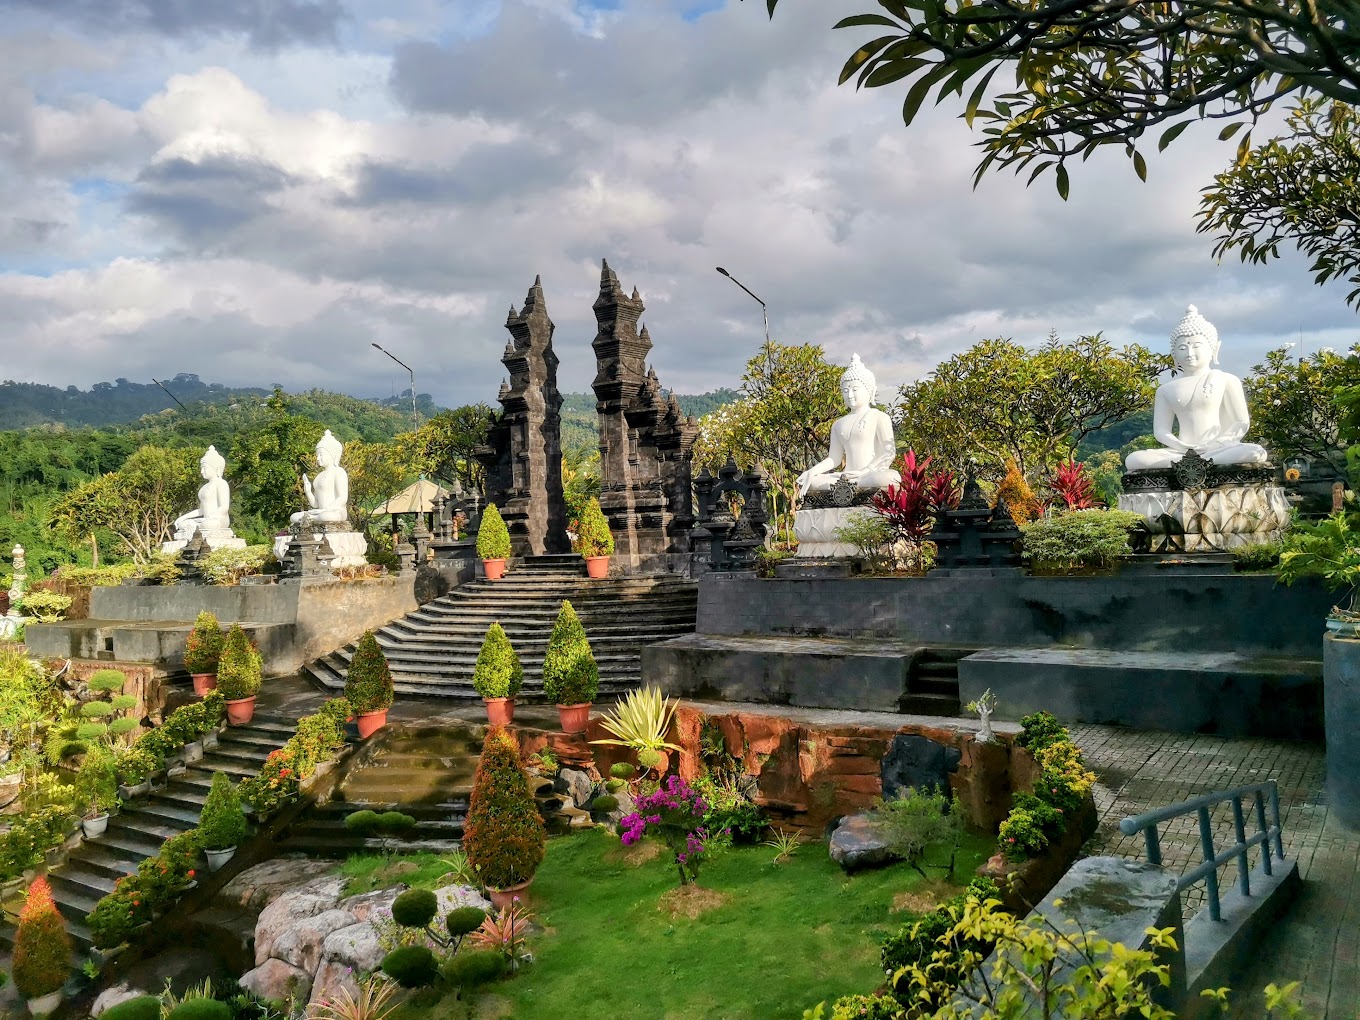 Daya Tarik Objek Wisata Brahma Budha Wihara di Singaraja Buleleng Bali